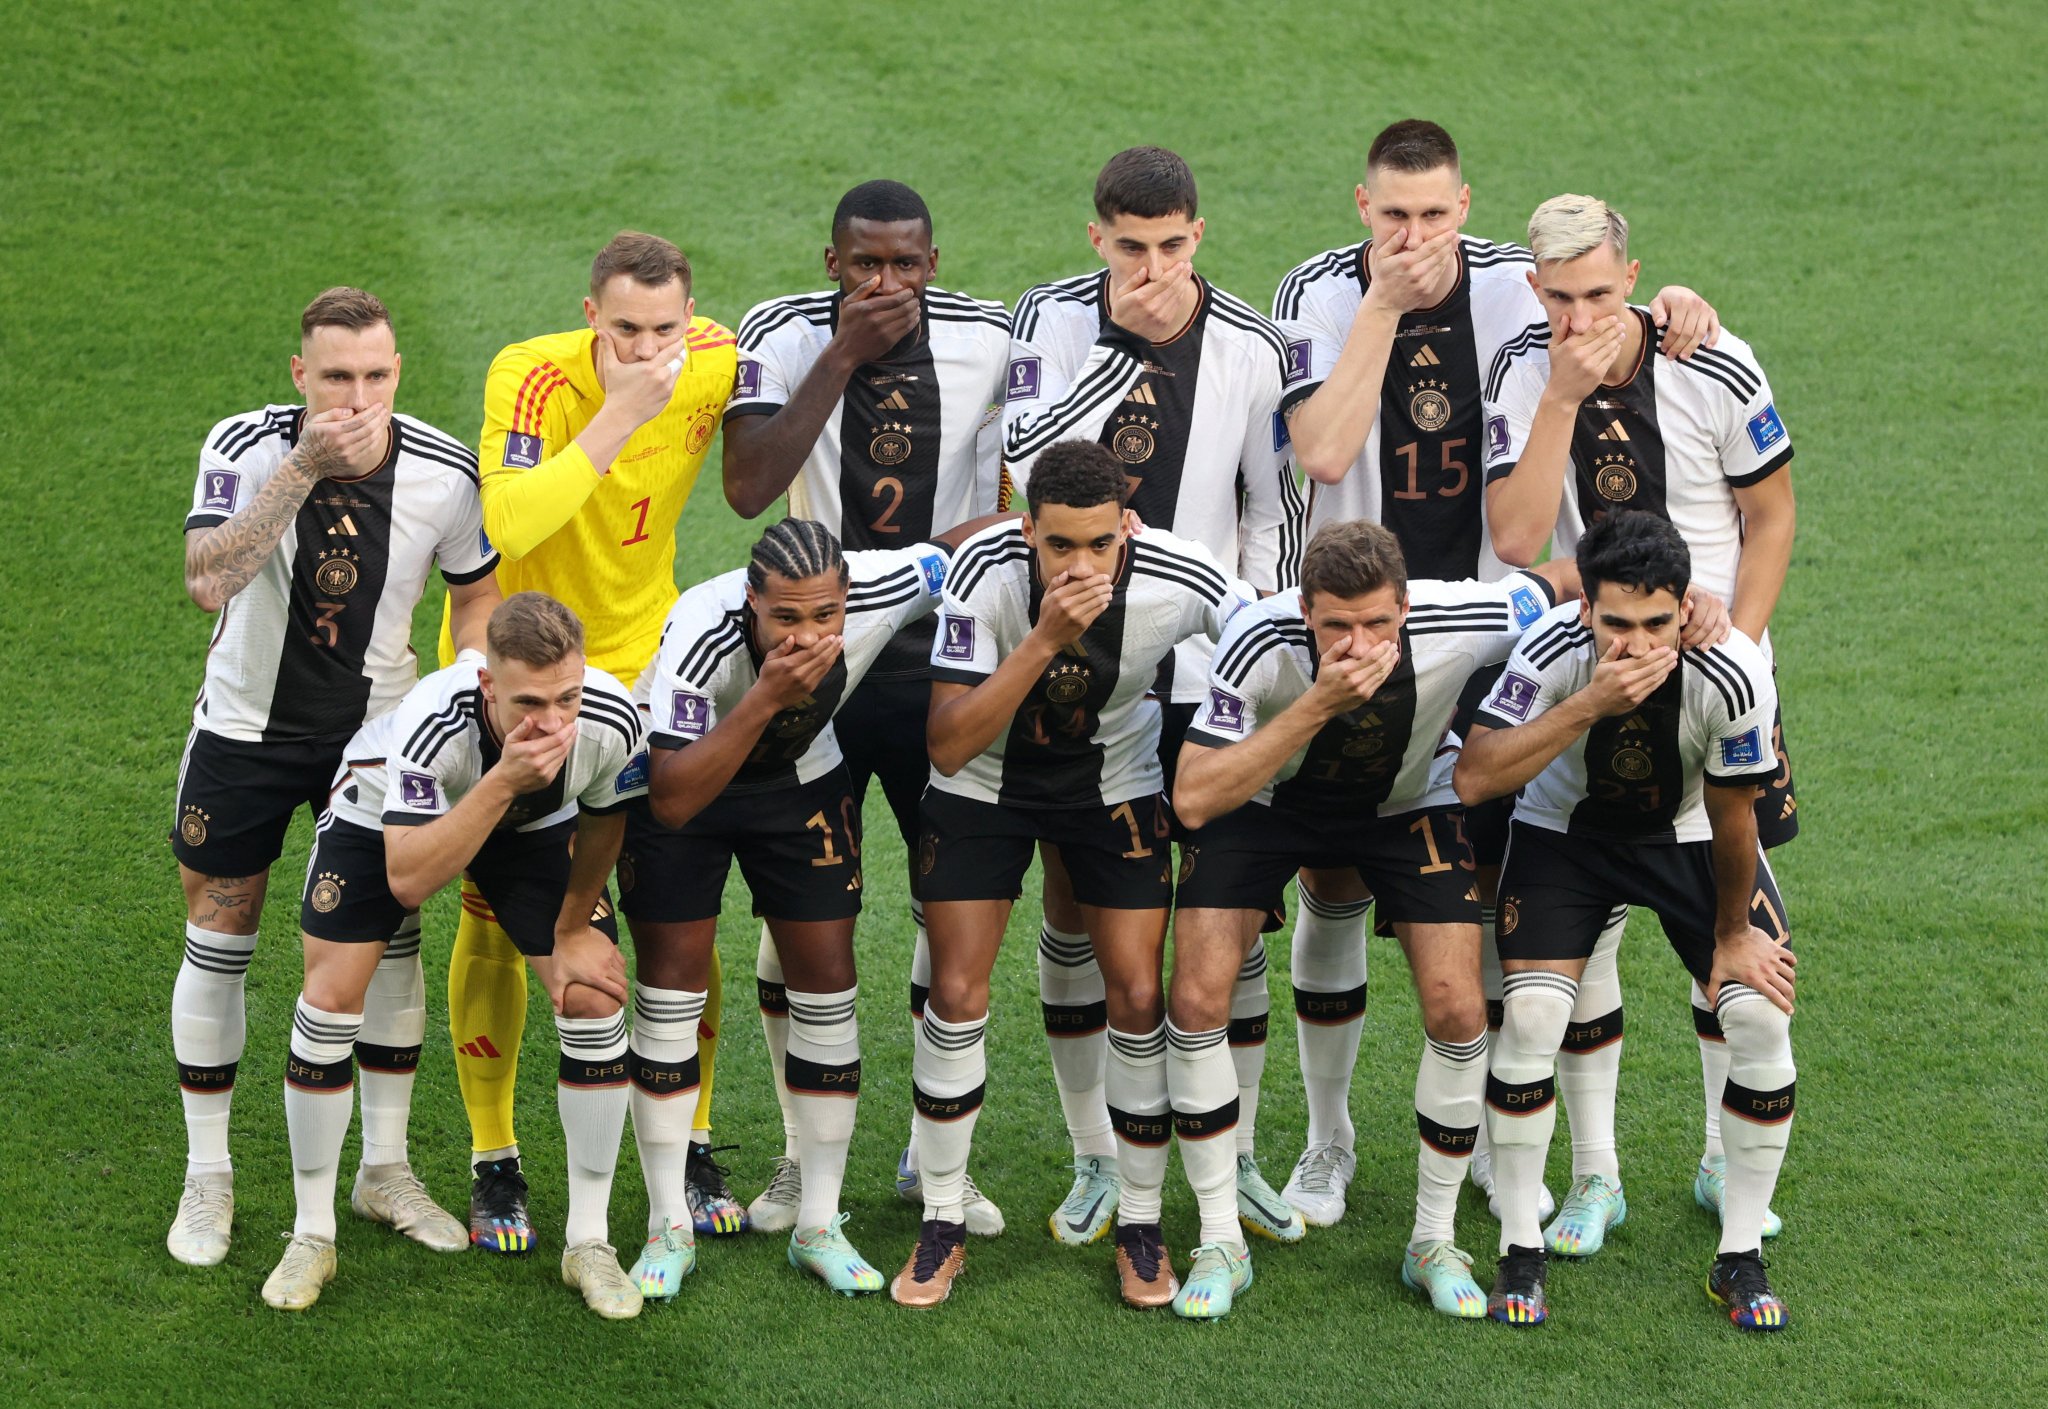 La selección alemana protestando antes del juego. Foto: @IgualdadLGBT